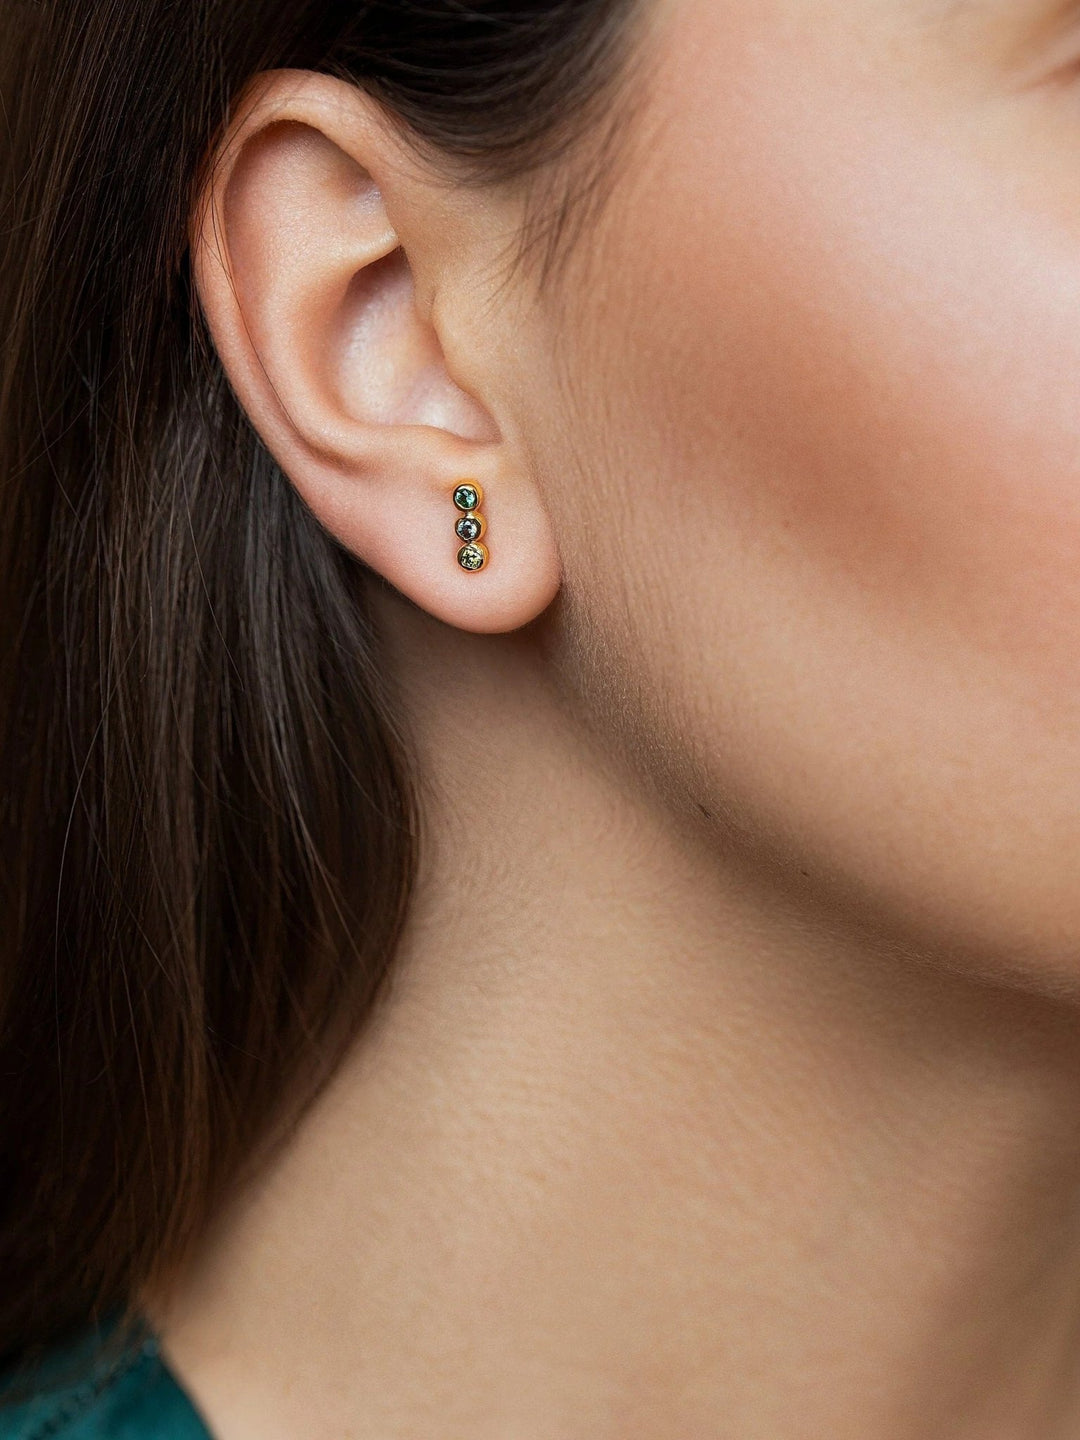 Alior Gold Stud Earrings - GREENSbirthstone earringscool earringsLunai Jewelry